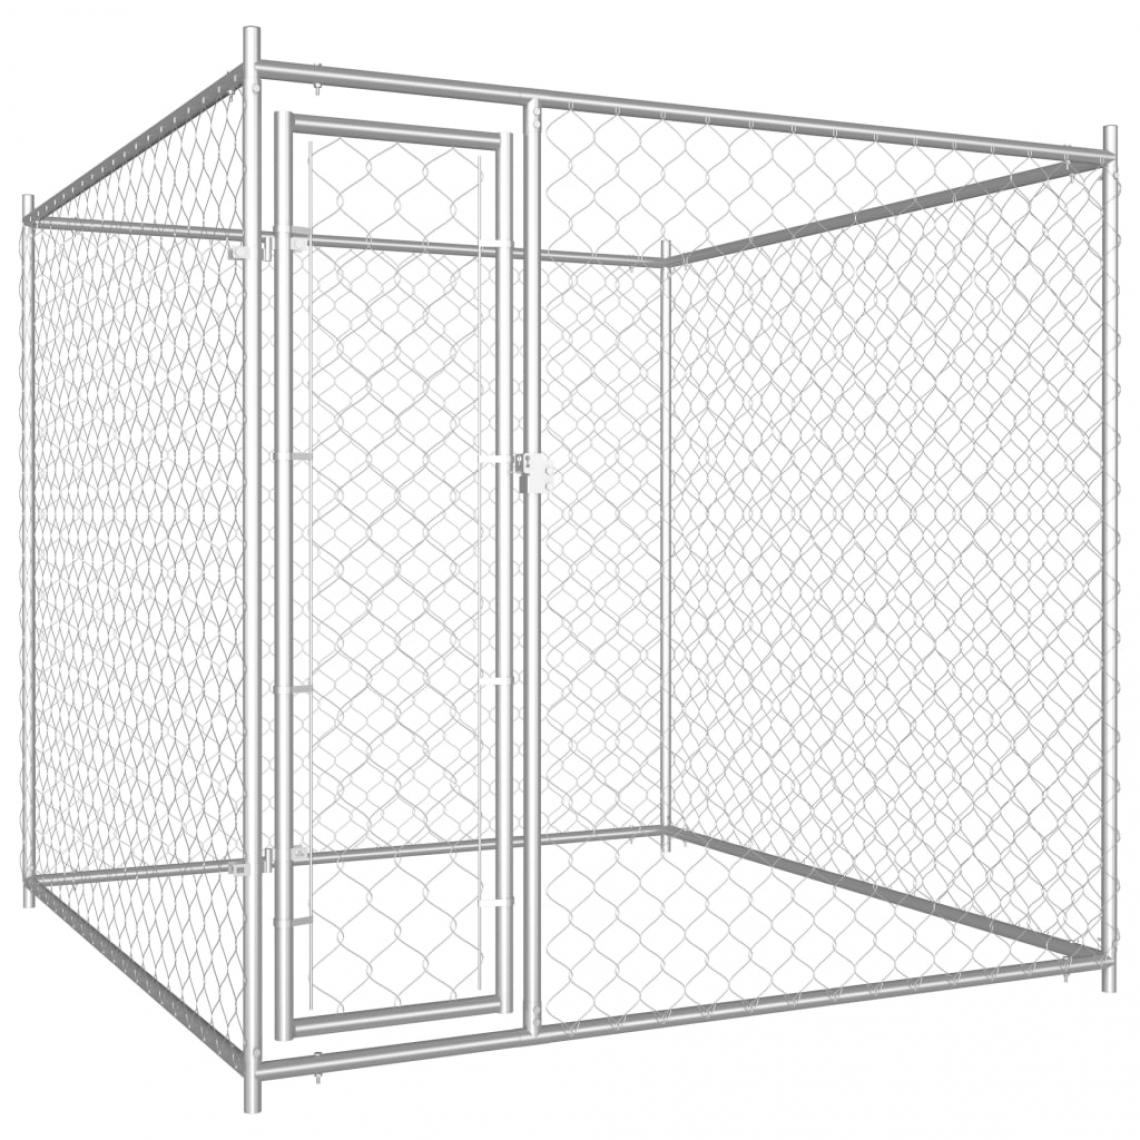 Helloshop26 - Chenil extérieur cage enclos parc animaux chien d'extérieur pour chiens 185 cm 02_0000342 - Clôture pour chien